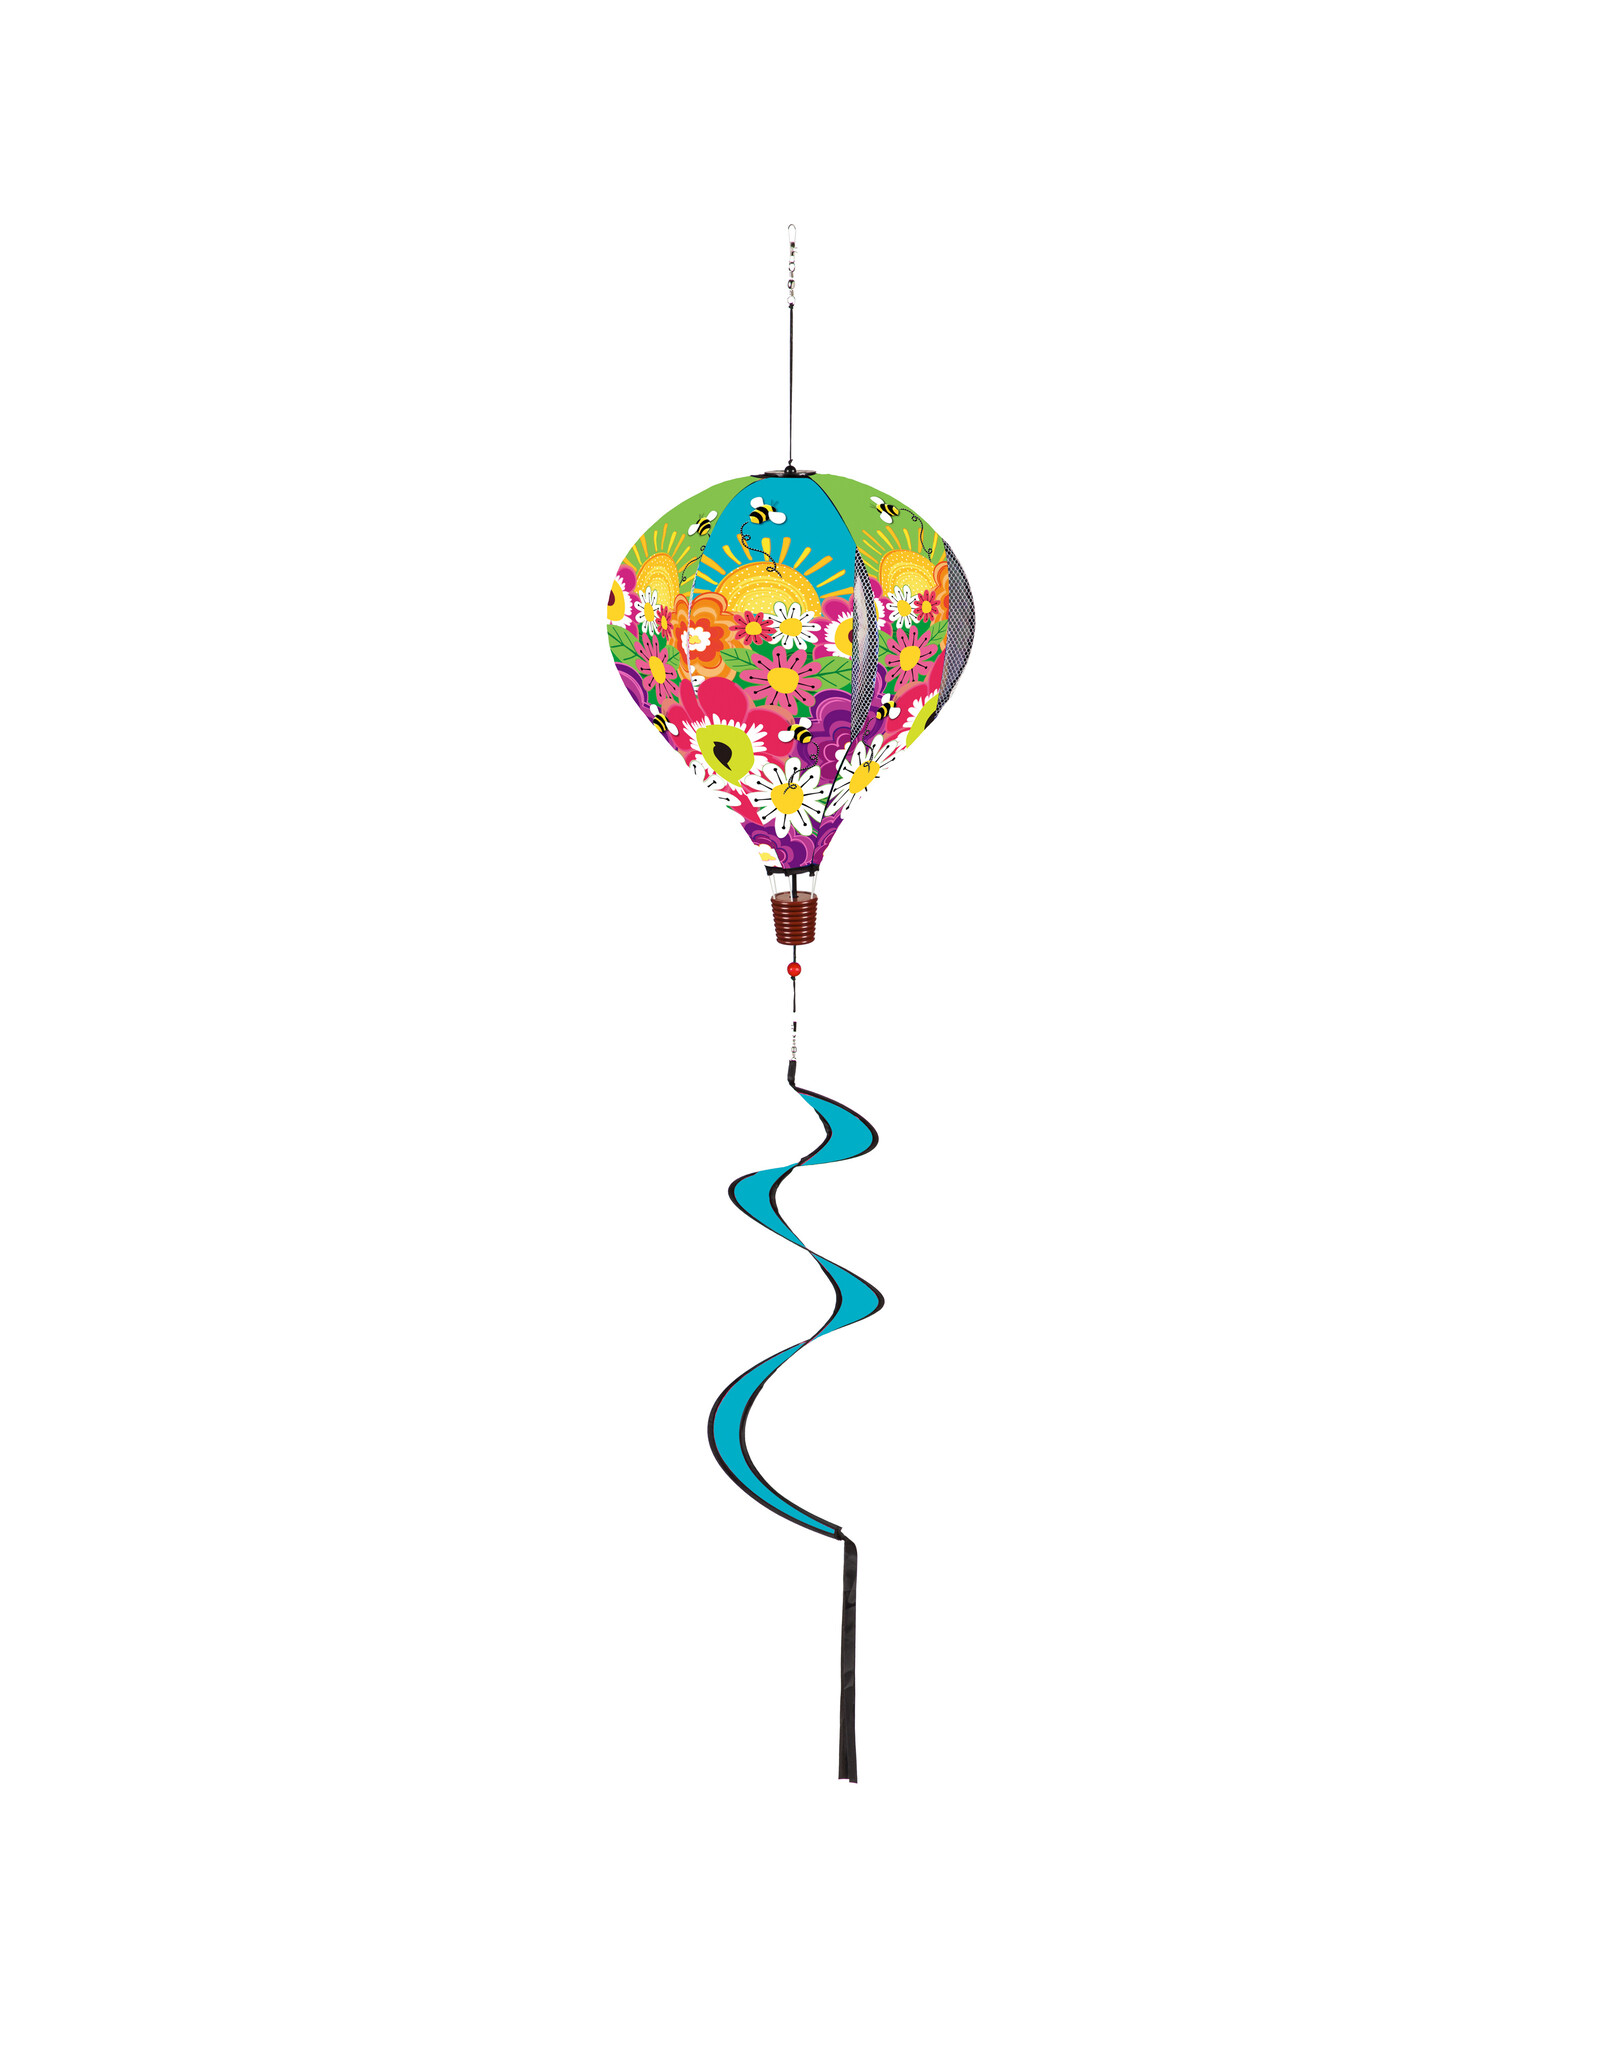 Evergreen Enterprises Hello Sunshine Burlap Balloon Spinner